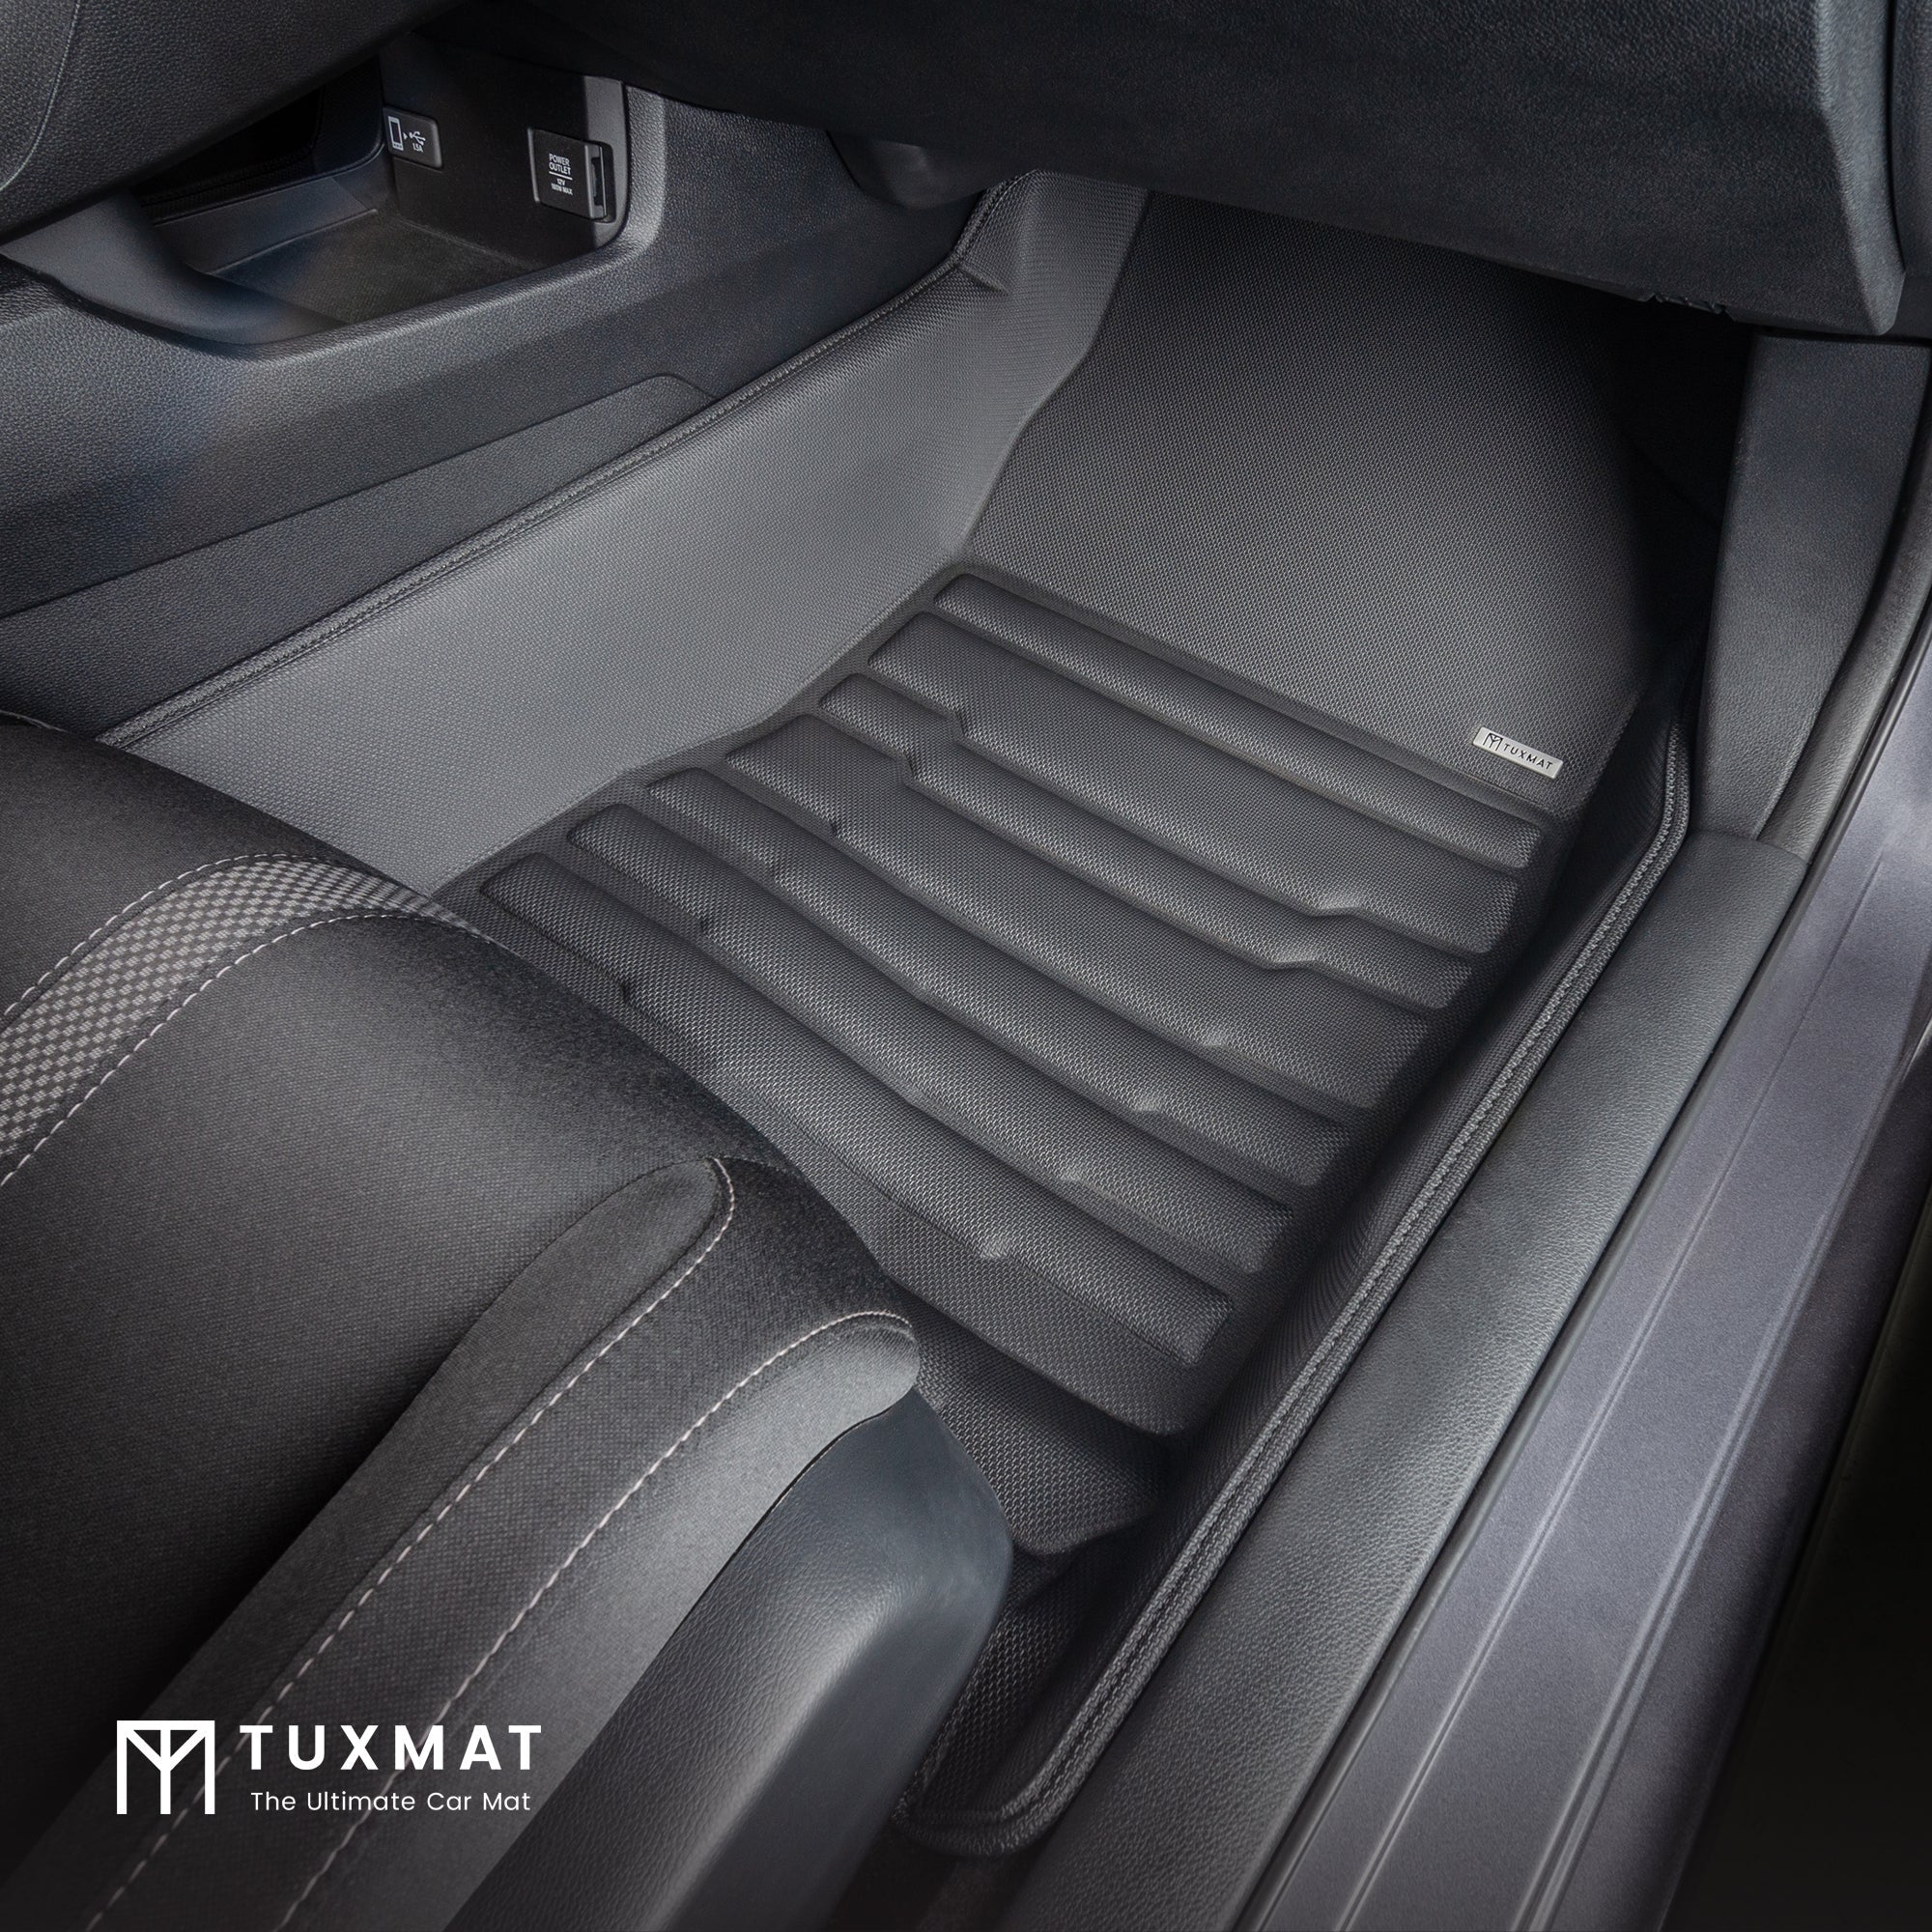 Passenger's Side Front TuxMat Floor Mat installed in Honda Civic Sedan/Hatchback/Coupe